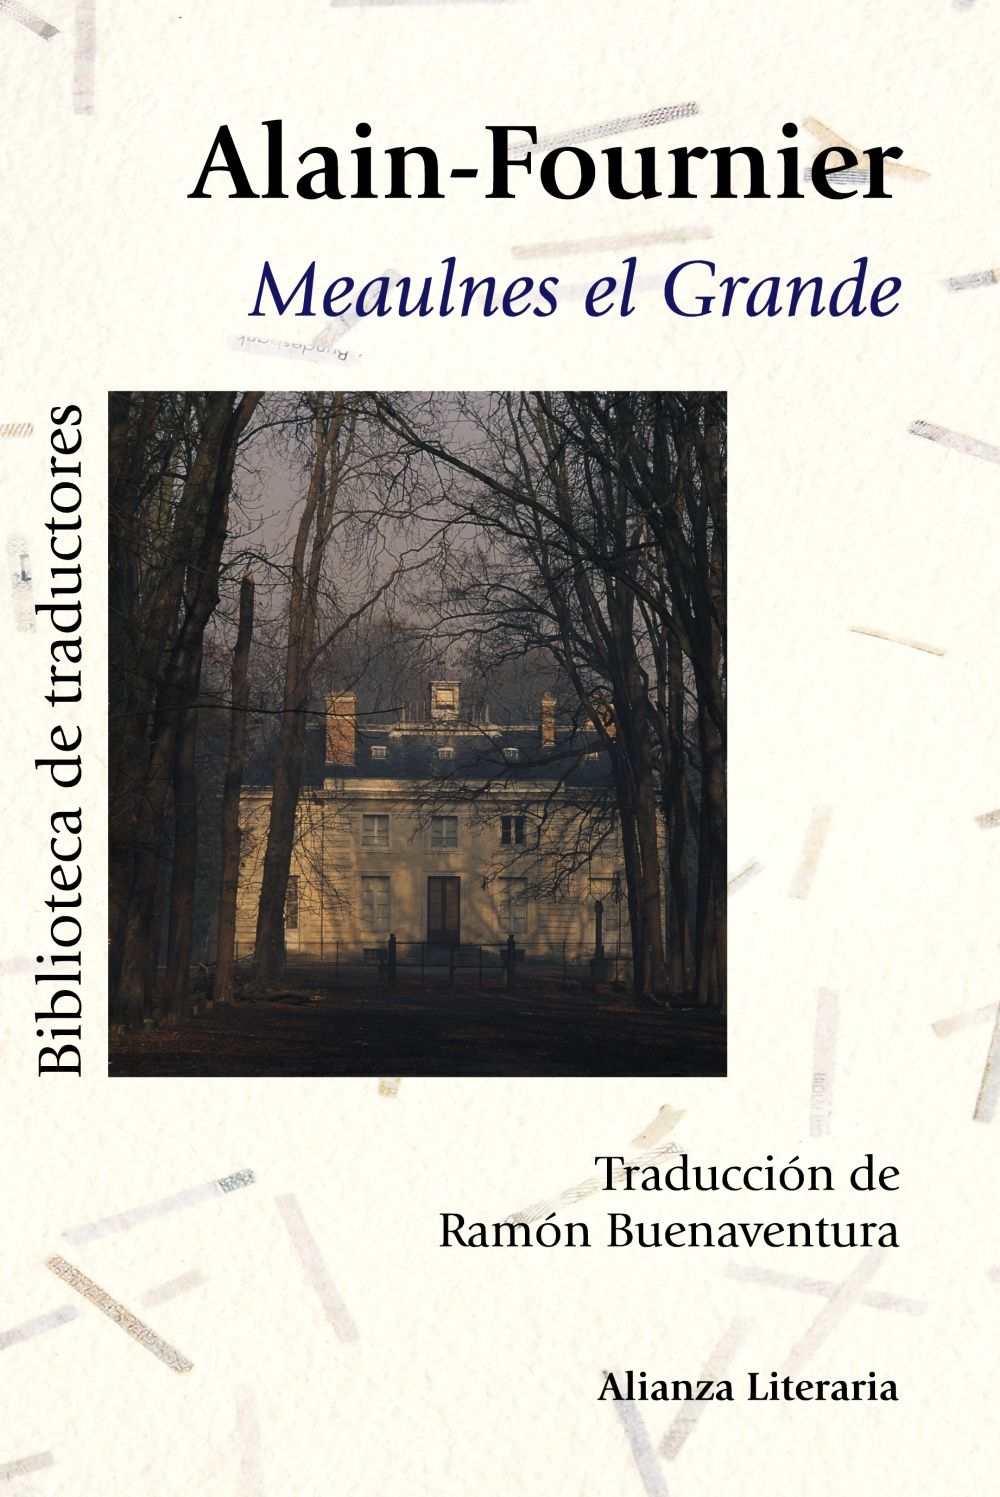 MEAULNES EL GRANDE. 